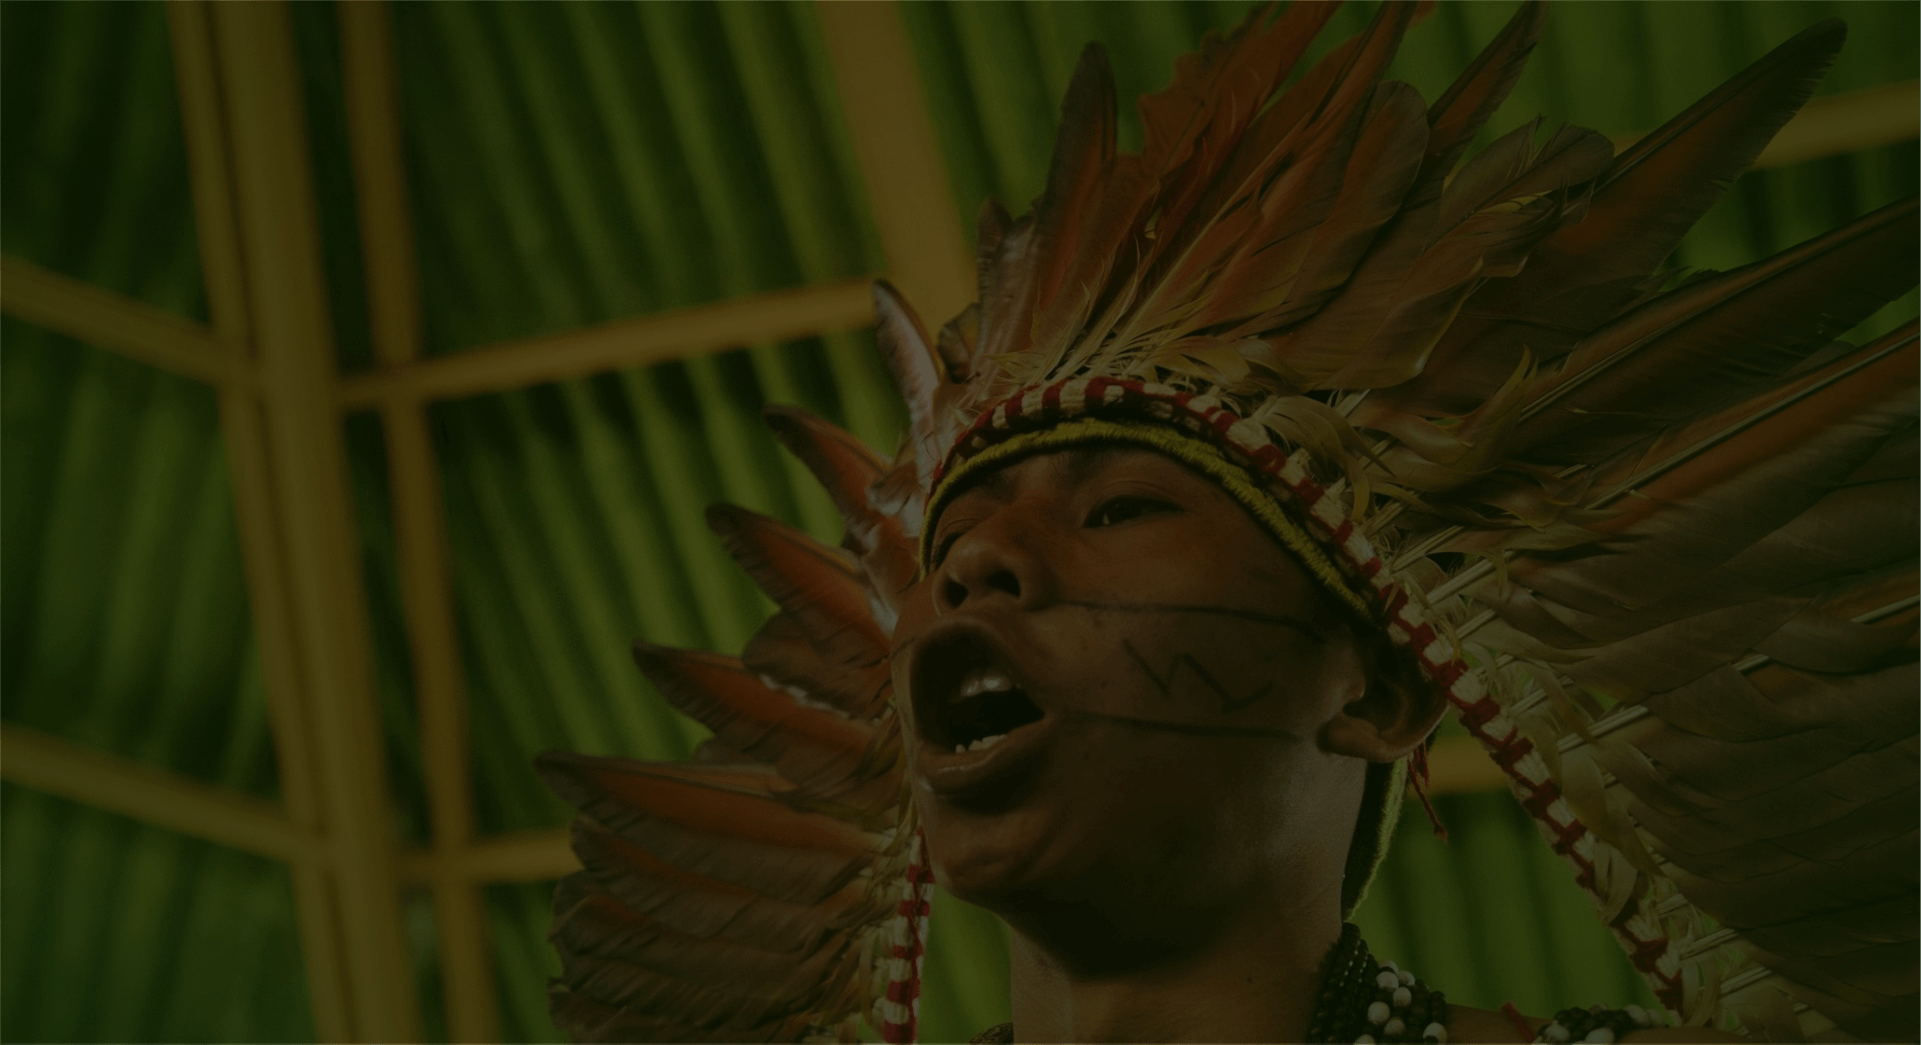 Homem indígena cantando com expressão de grito, expressando fortemente sua voz